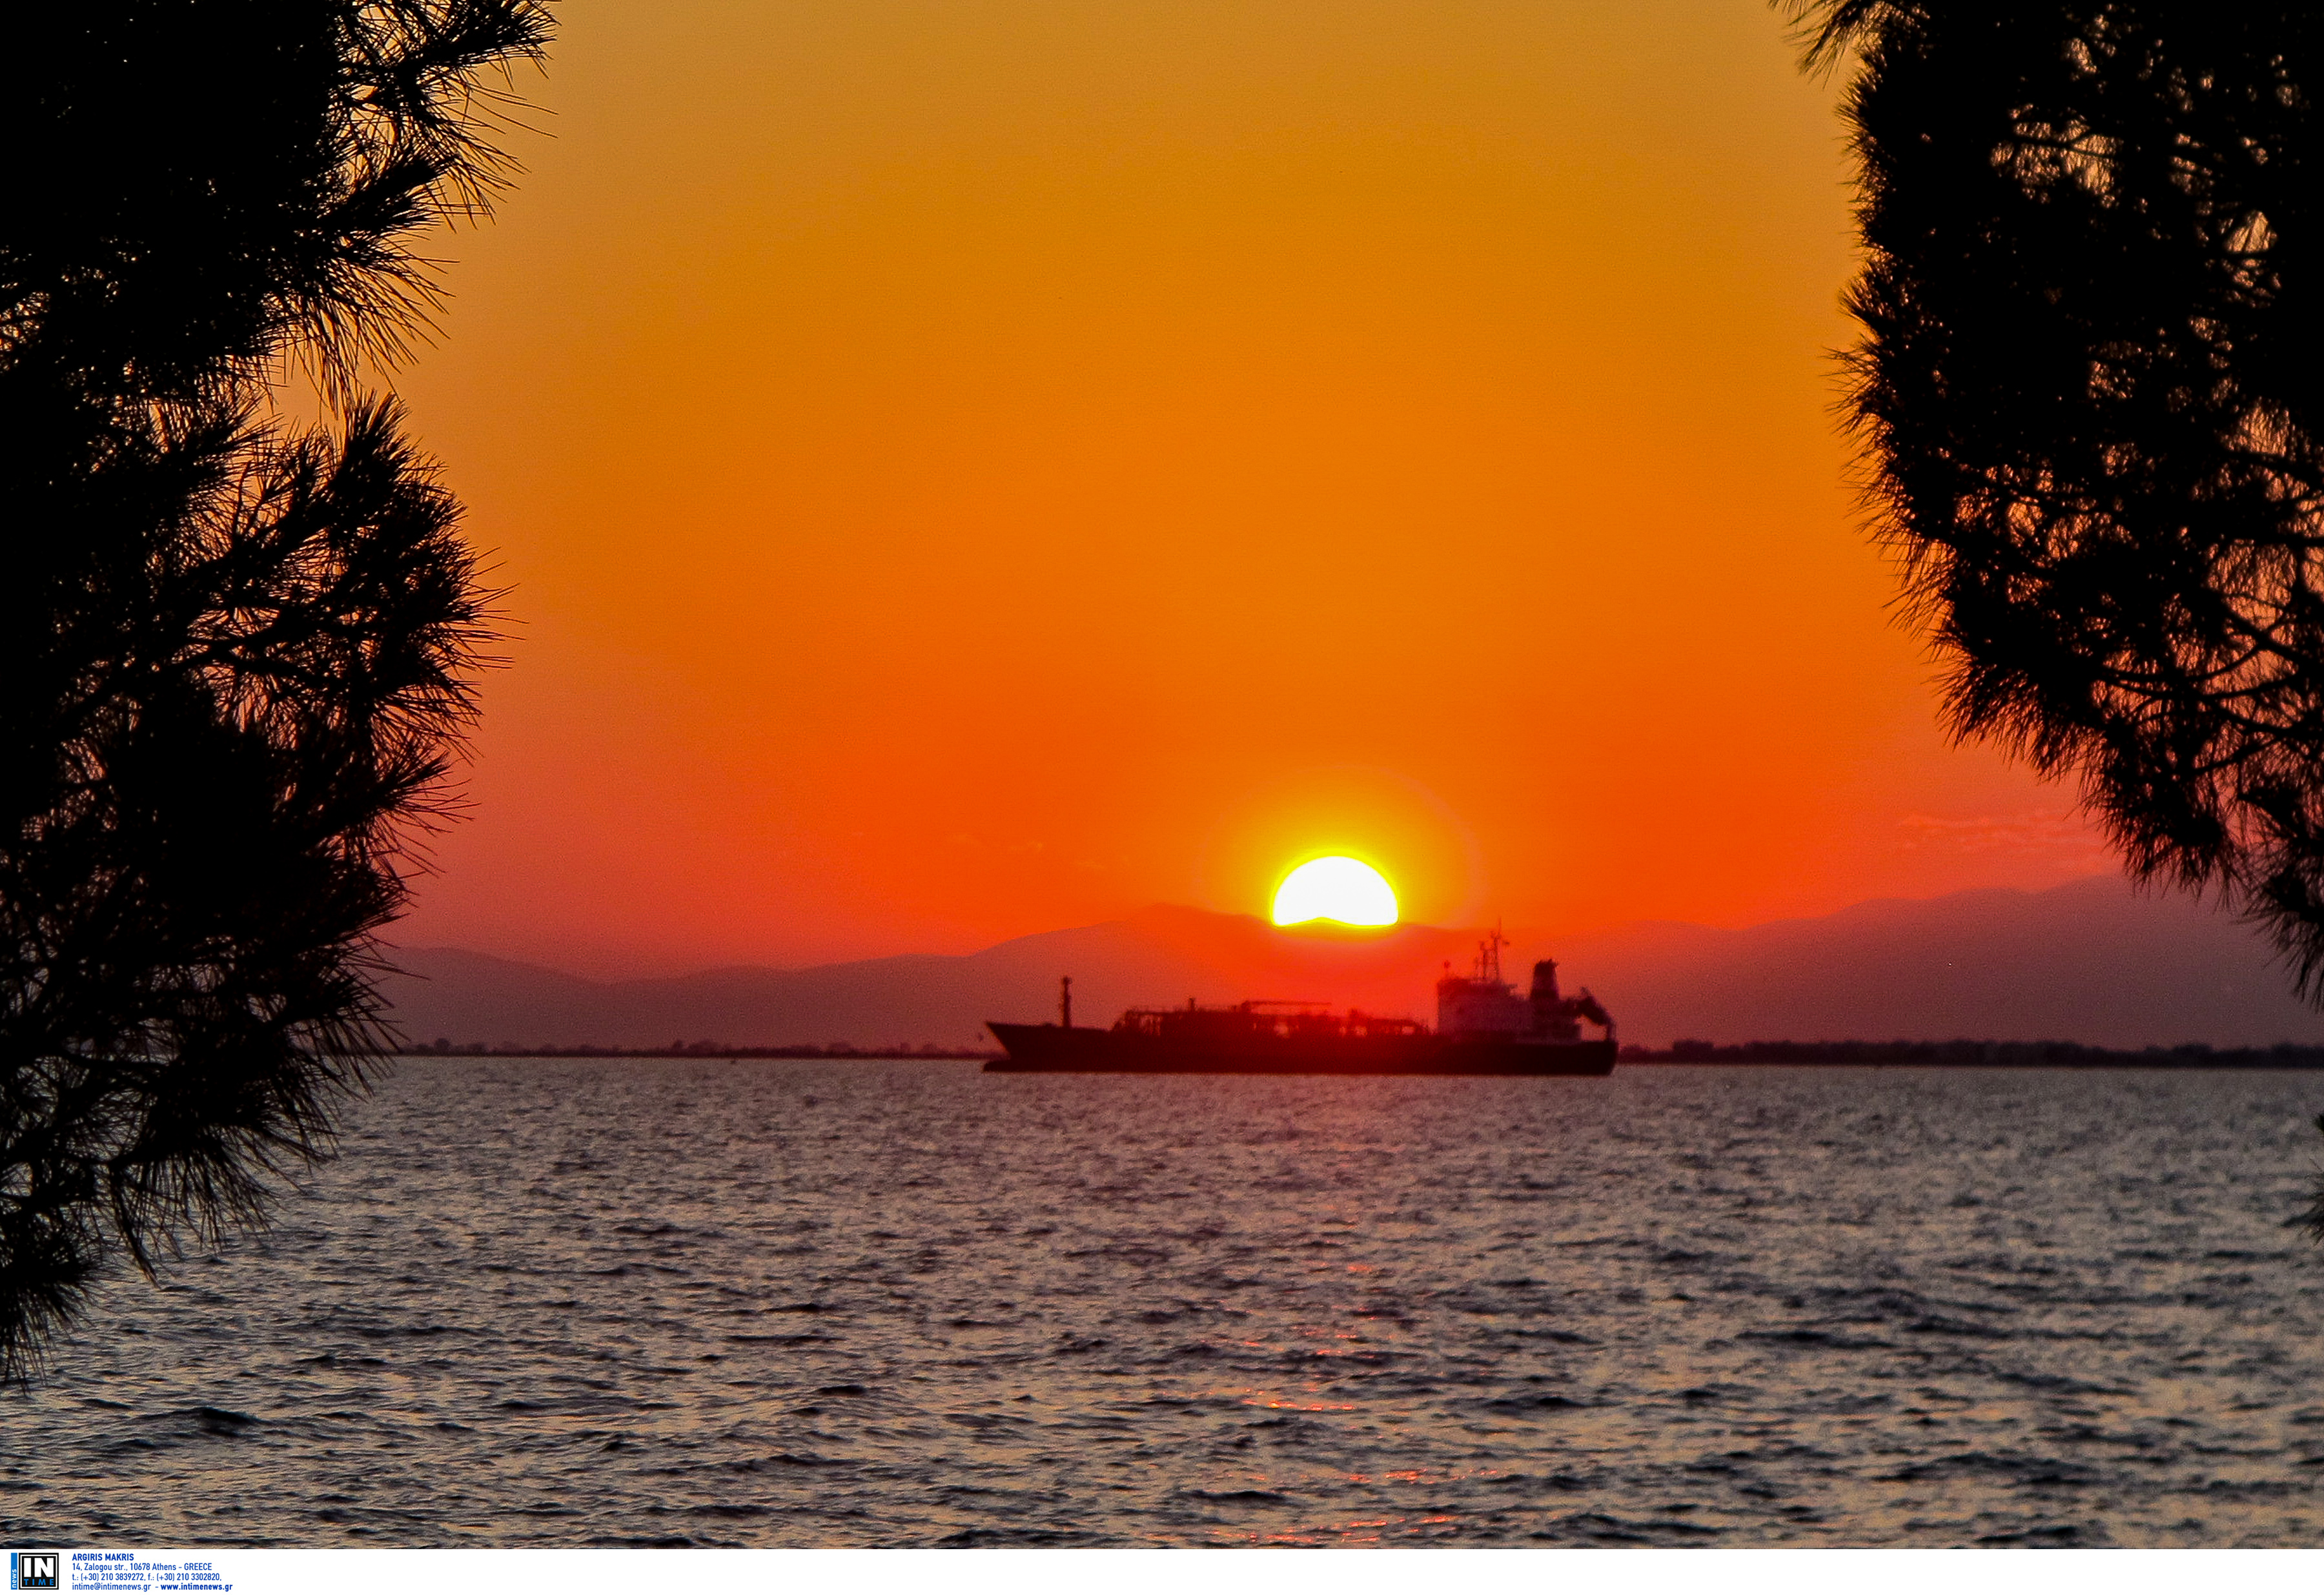 Όμορφη Θεσσαλονίκη και όταν ο ήλιος δύει…